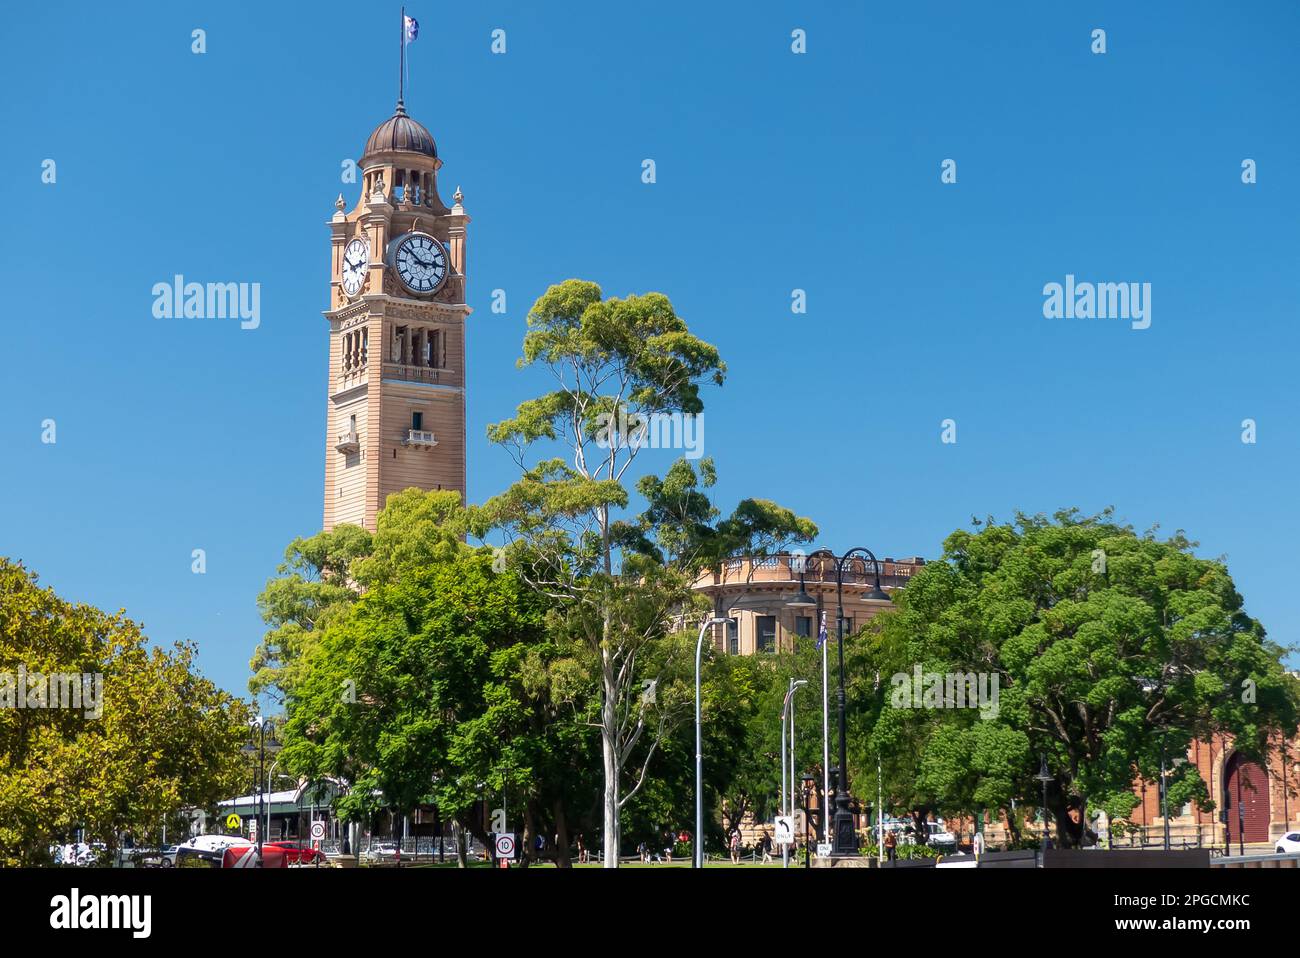 Sydney, Australie : tour de l'horloge de la gare centrale Banque D'Images